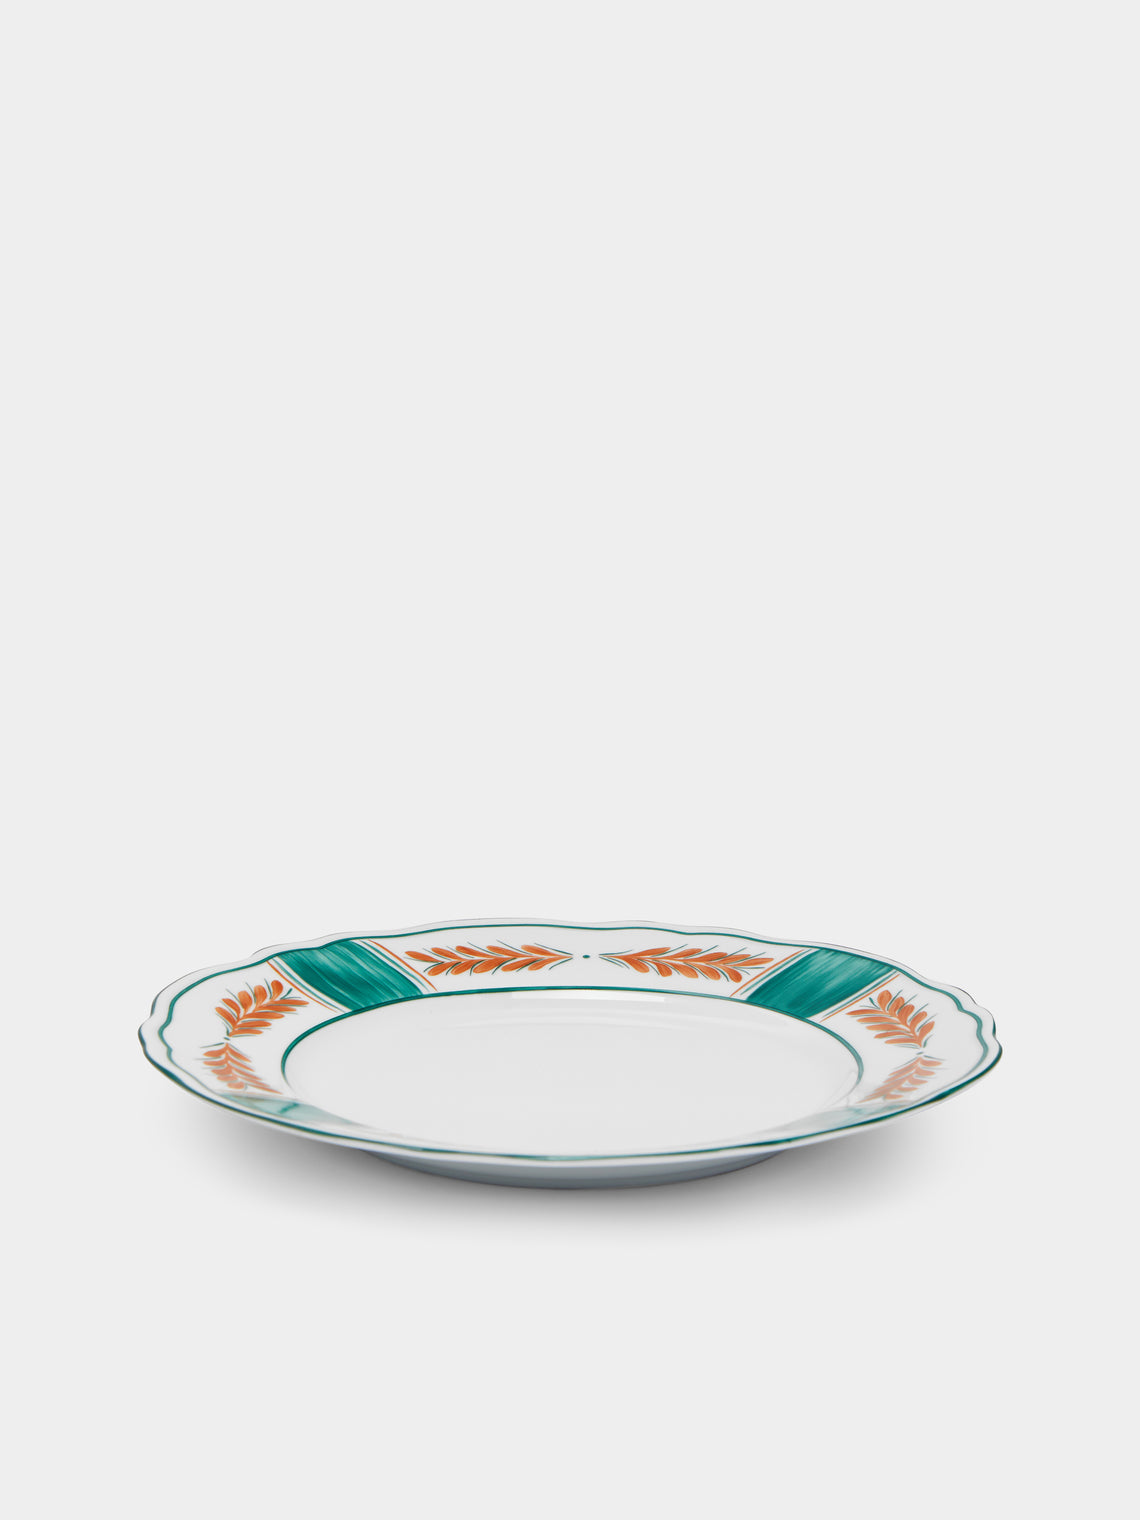 Molecot - Jardin Porcelain Dinner Plates (Set of 4) -  - ABASK